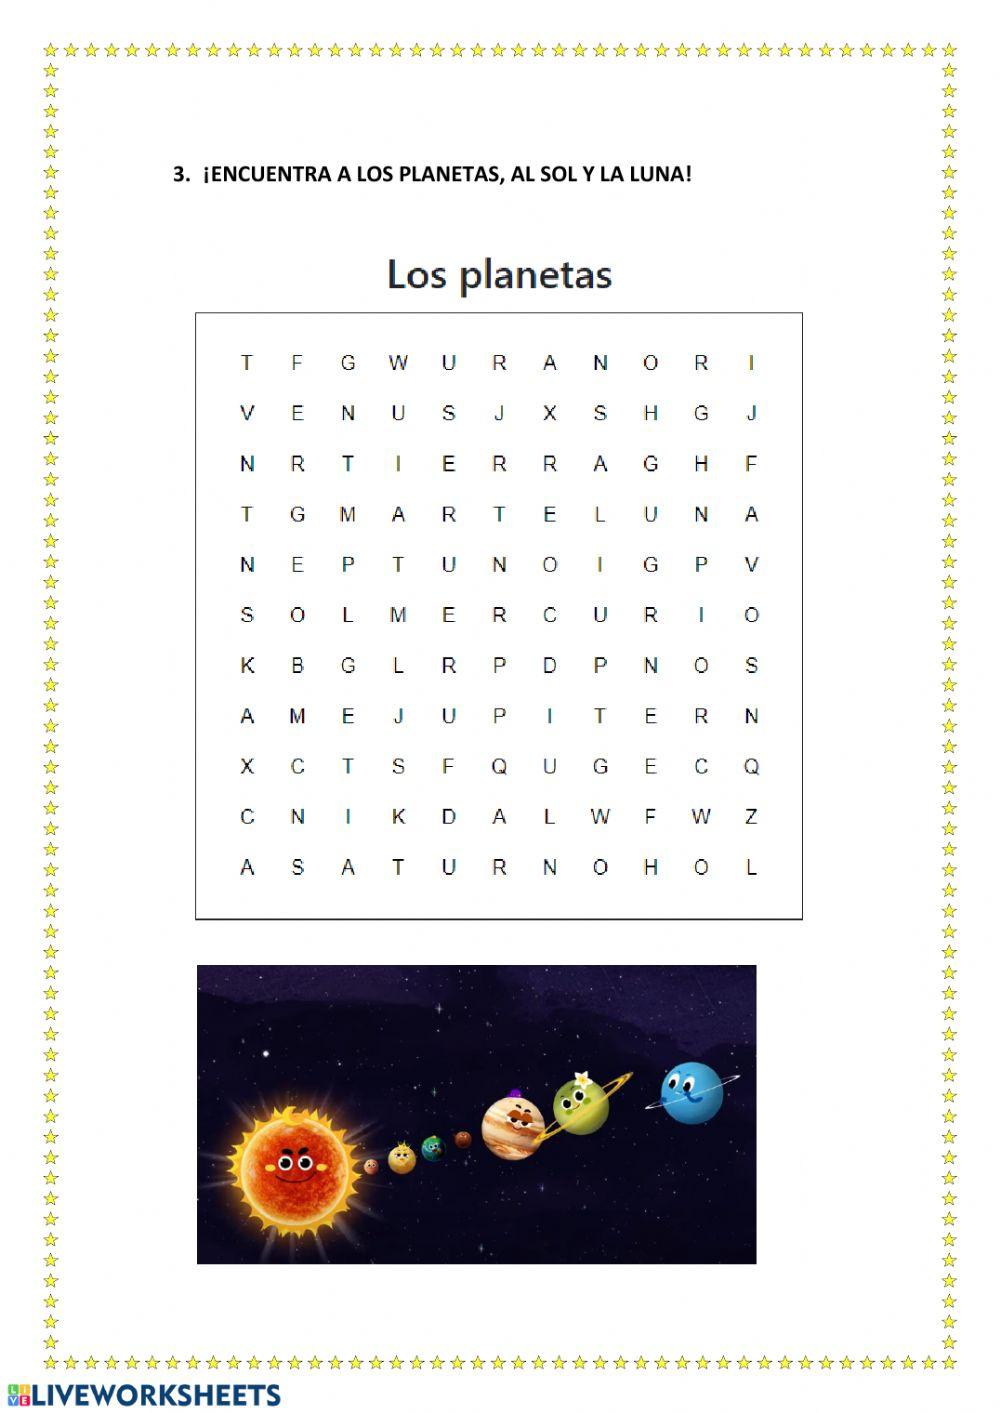 Los planetas